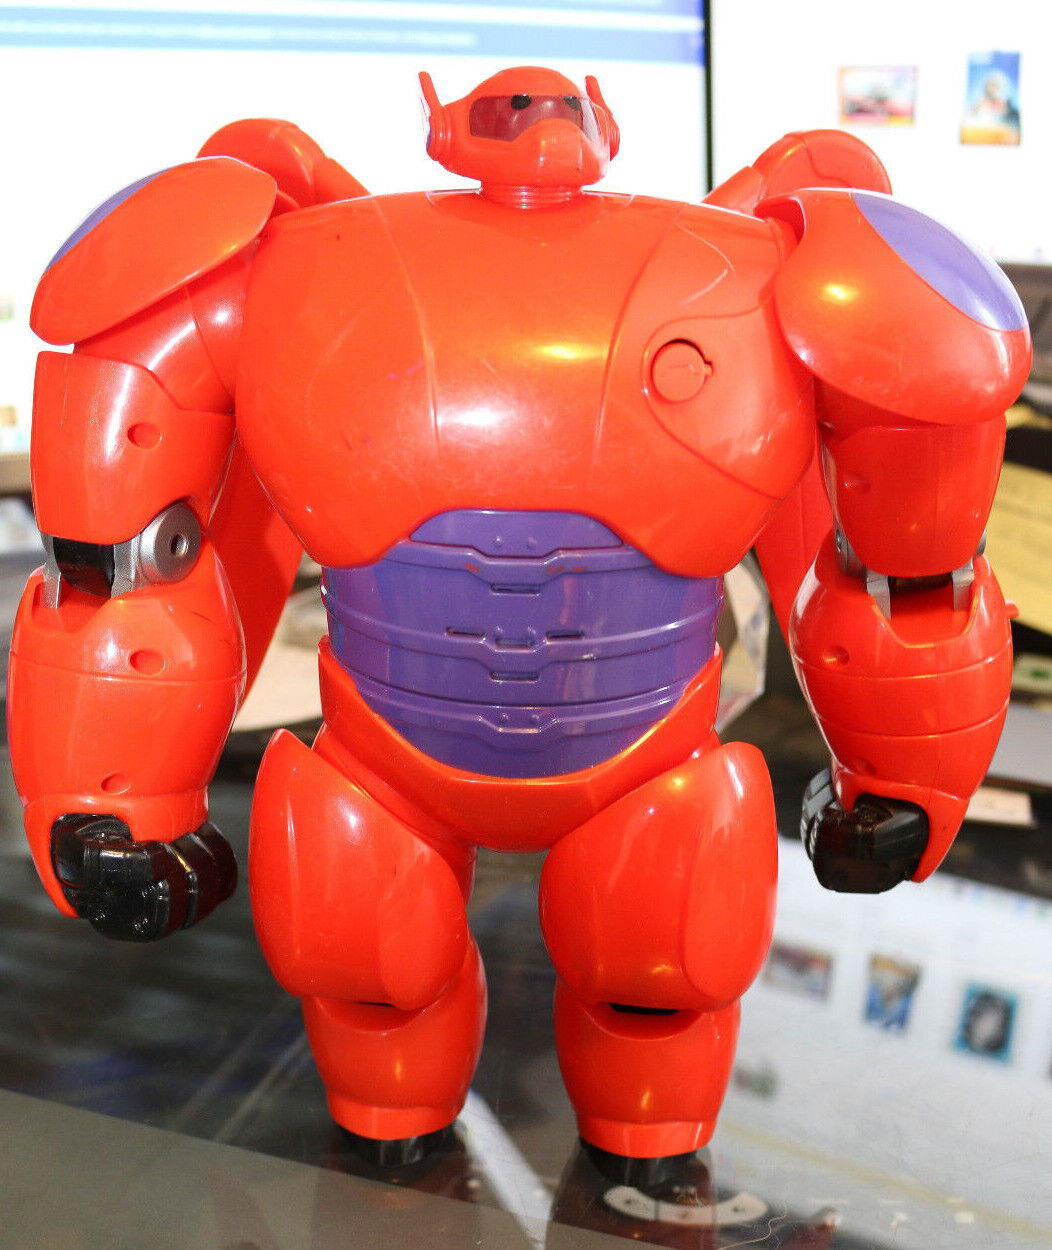 2014 Disney Bandai Big Hero 6 Deluxe Flying Baymax Action Figure 11" Inch Figure